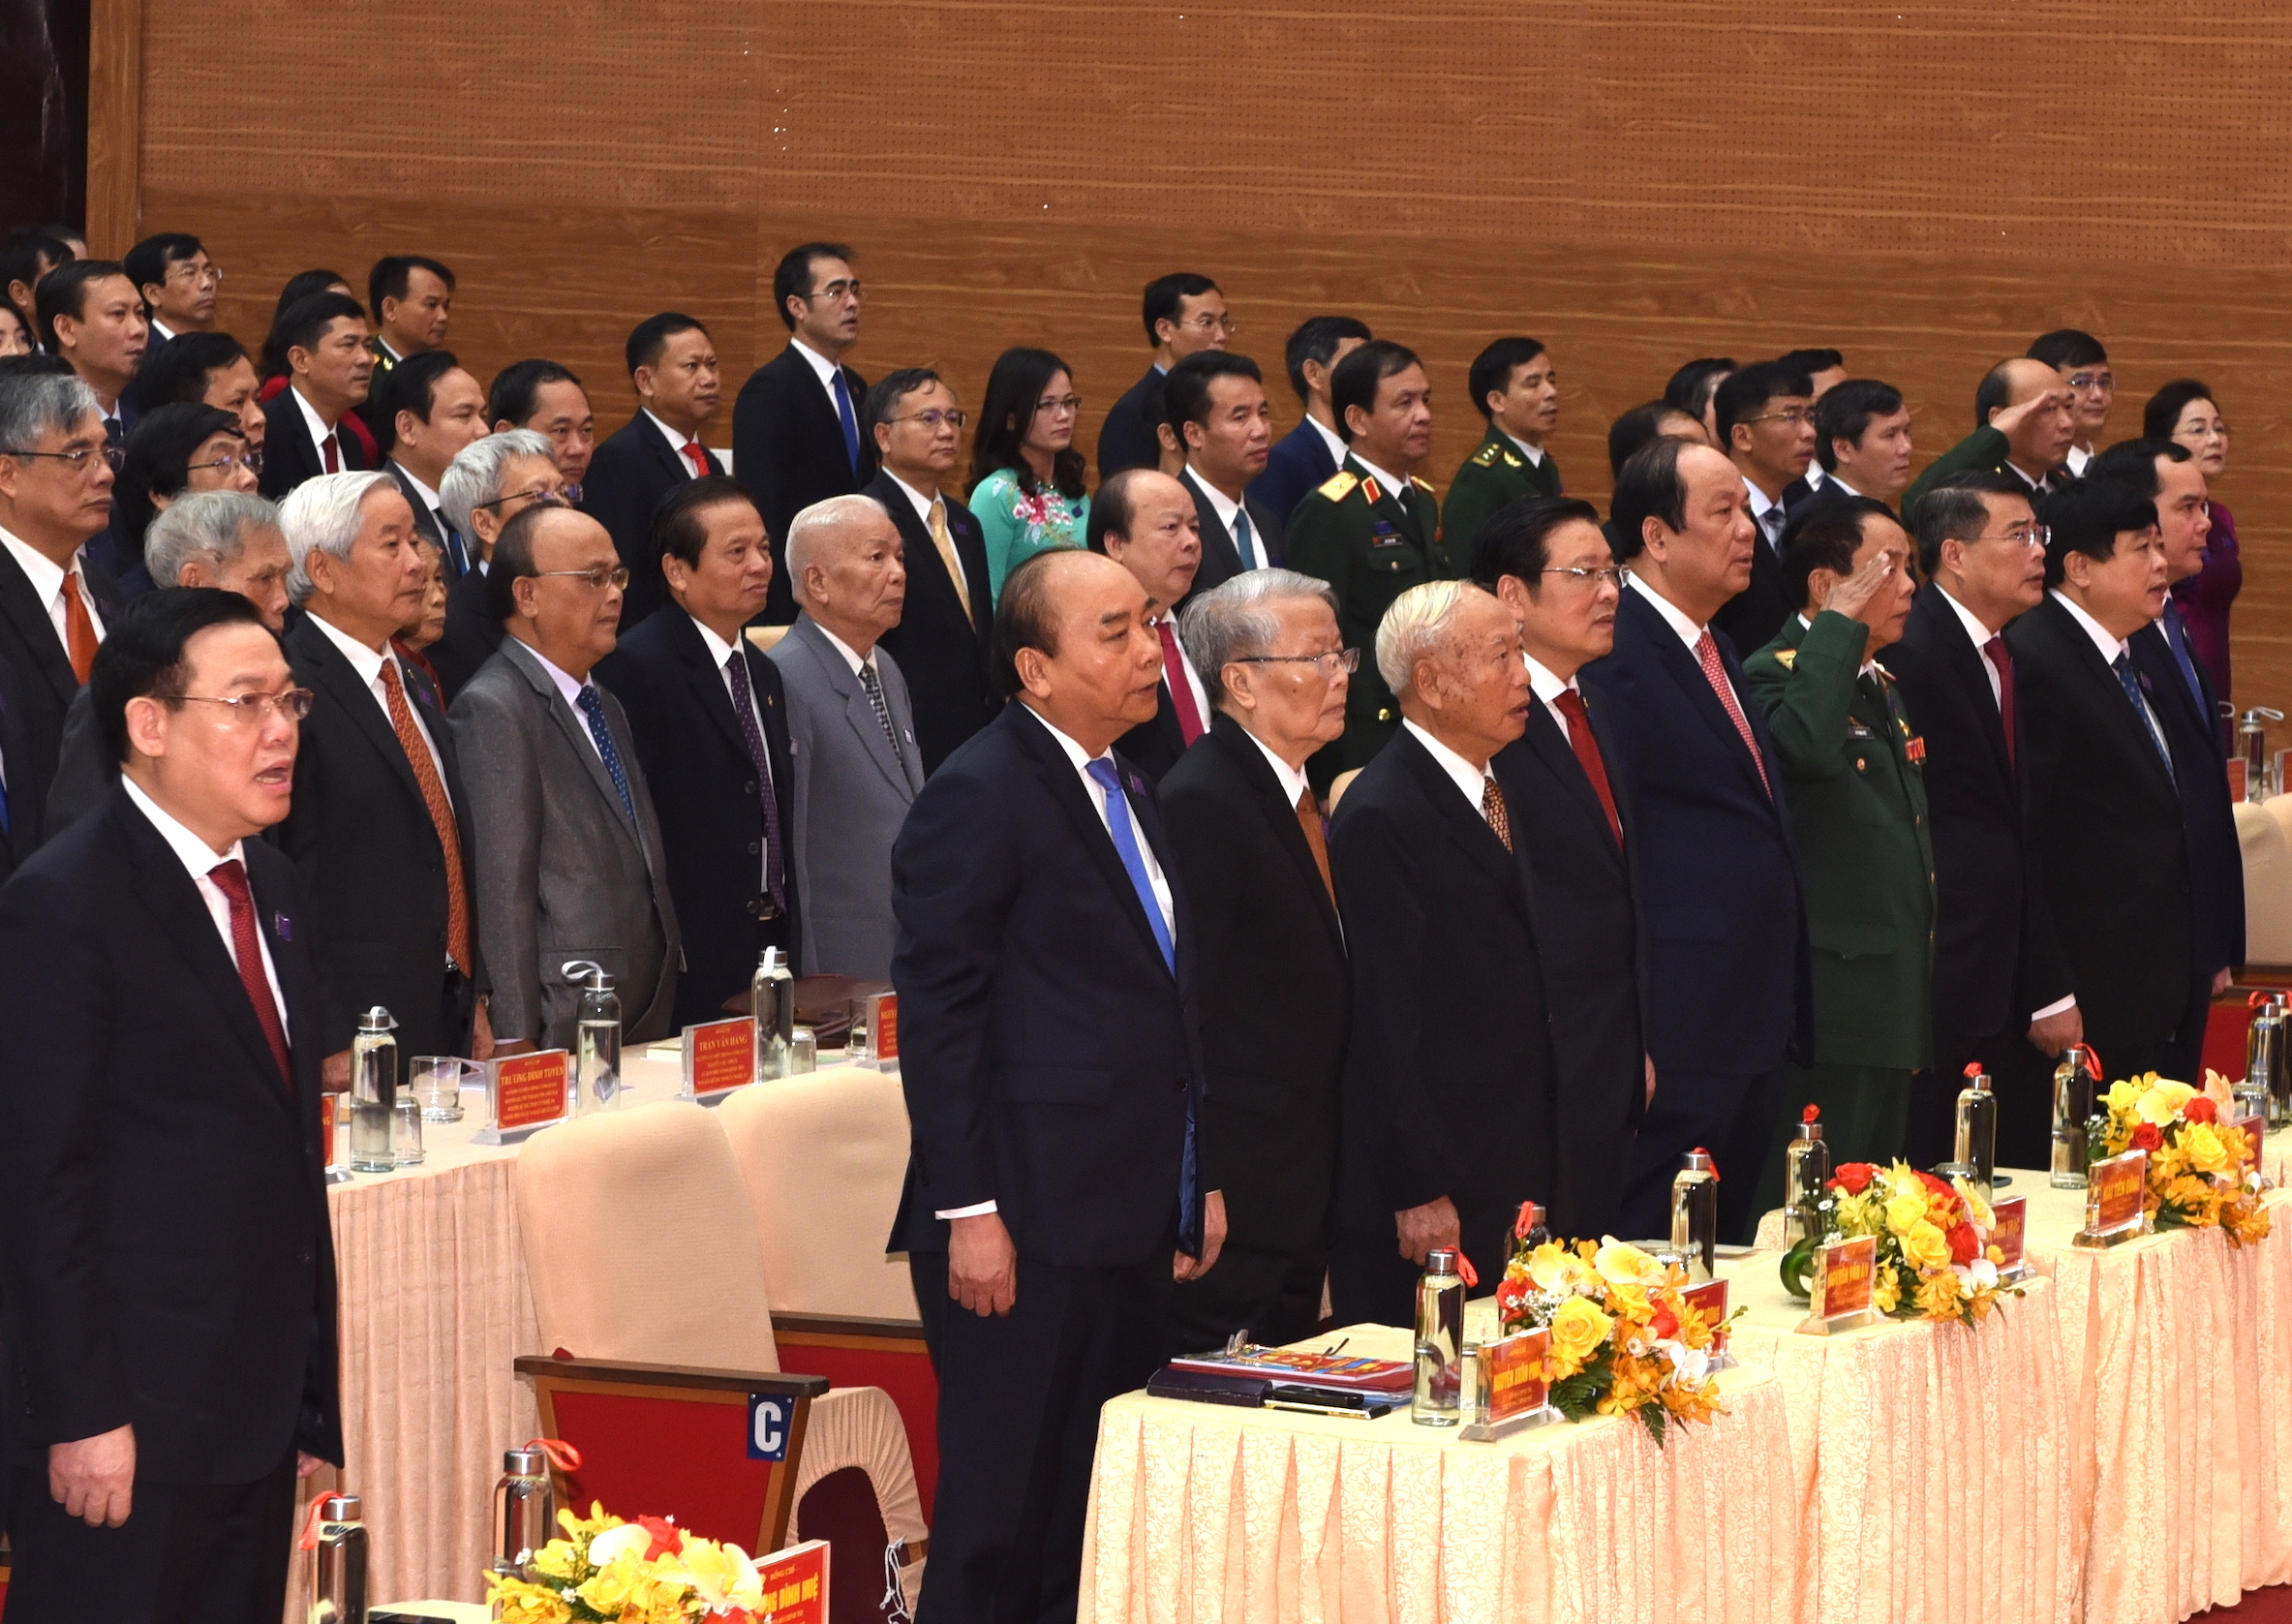 Thủ tướng dự Đại hội đại biểu Đảng bộ tỉnh Nghệ An